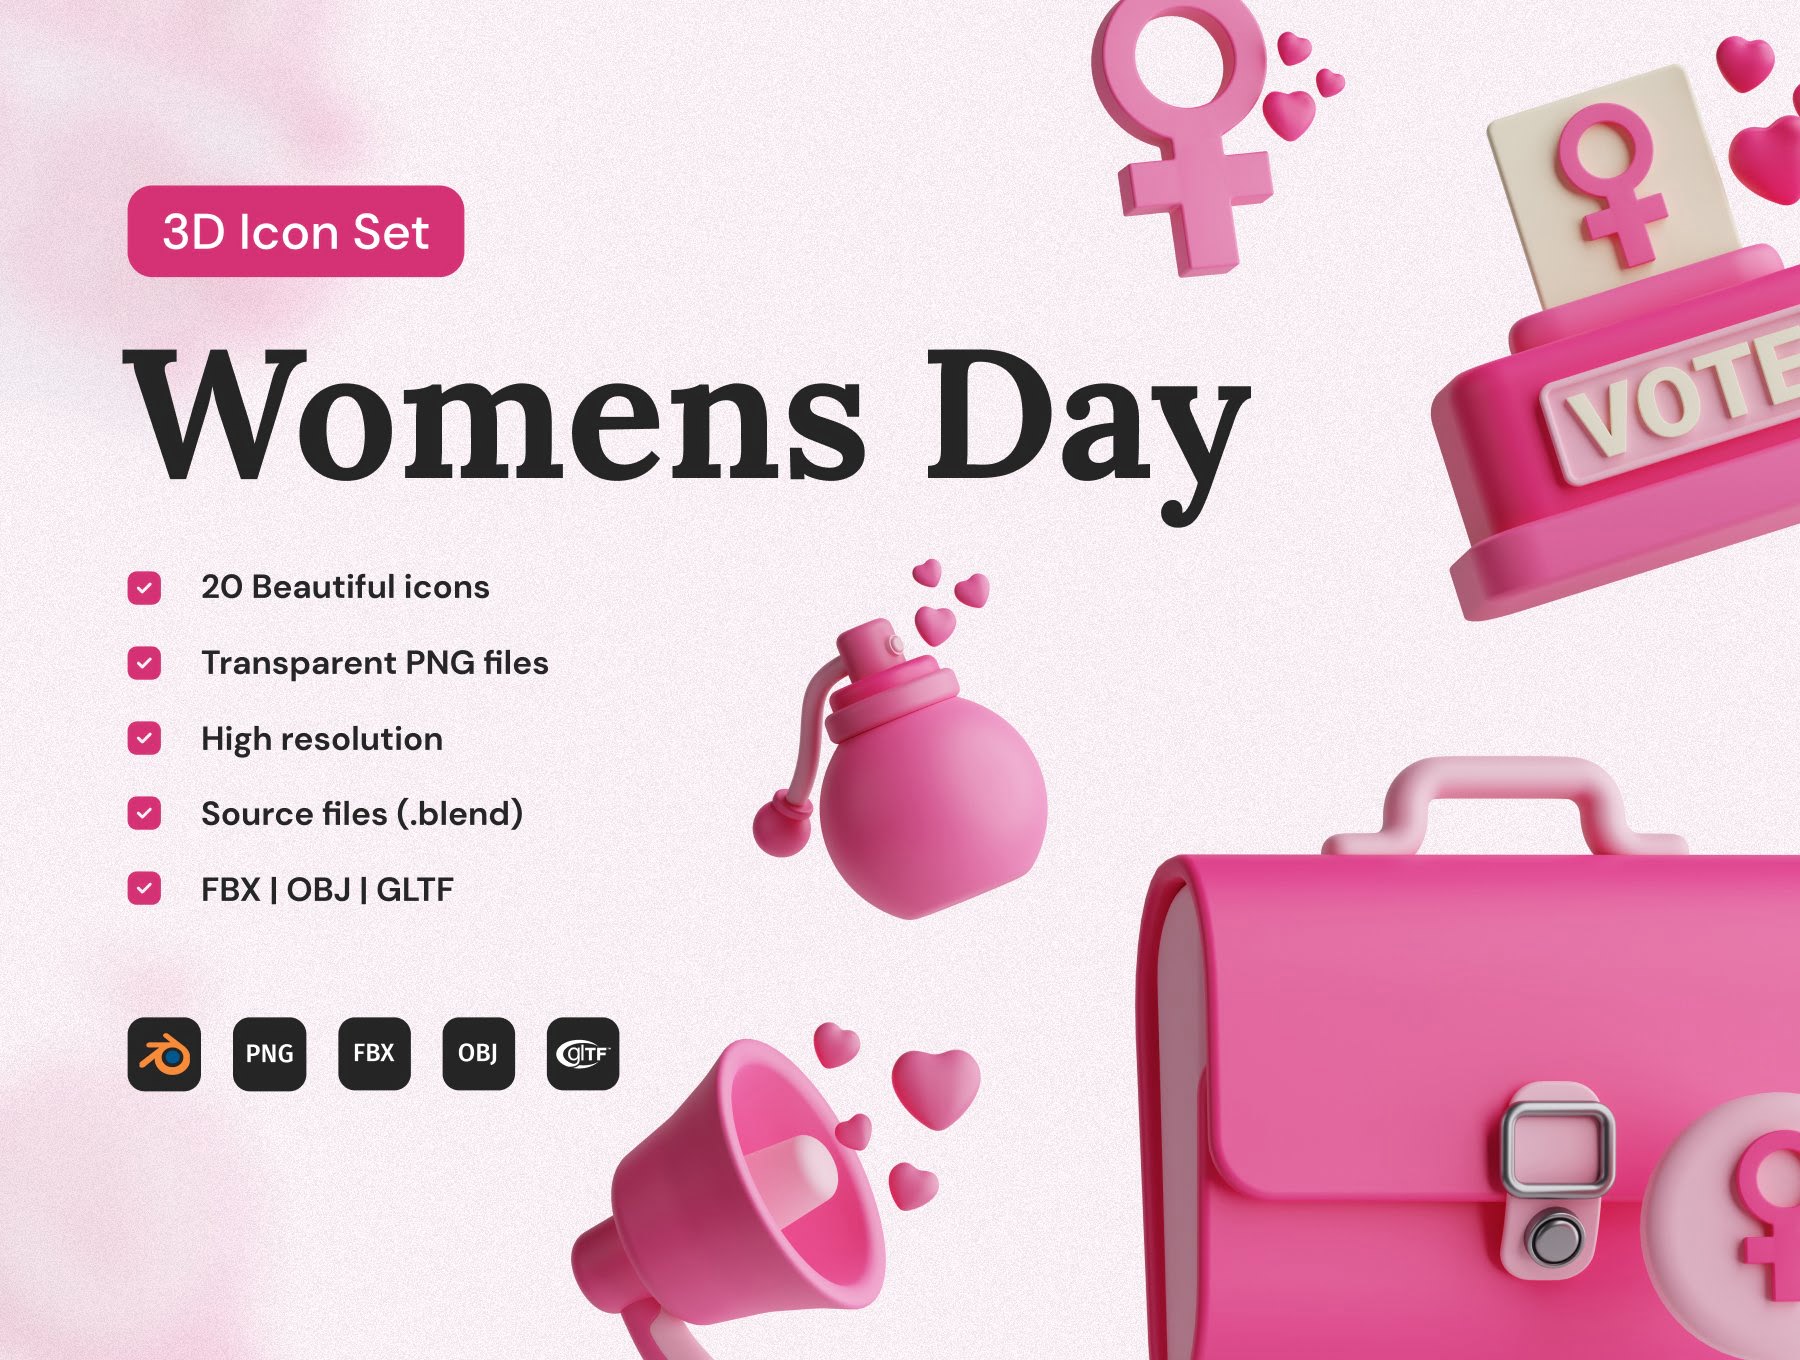 38女人节3D图标集 Women's Day 3D Icon Set-3D/图标-到位啦UI